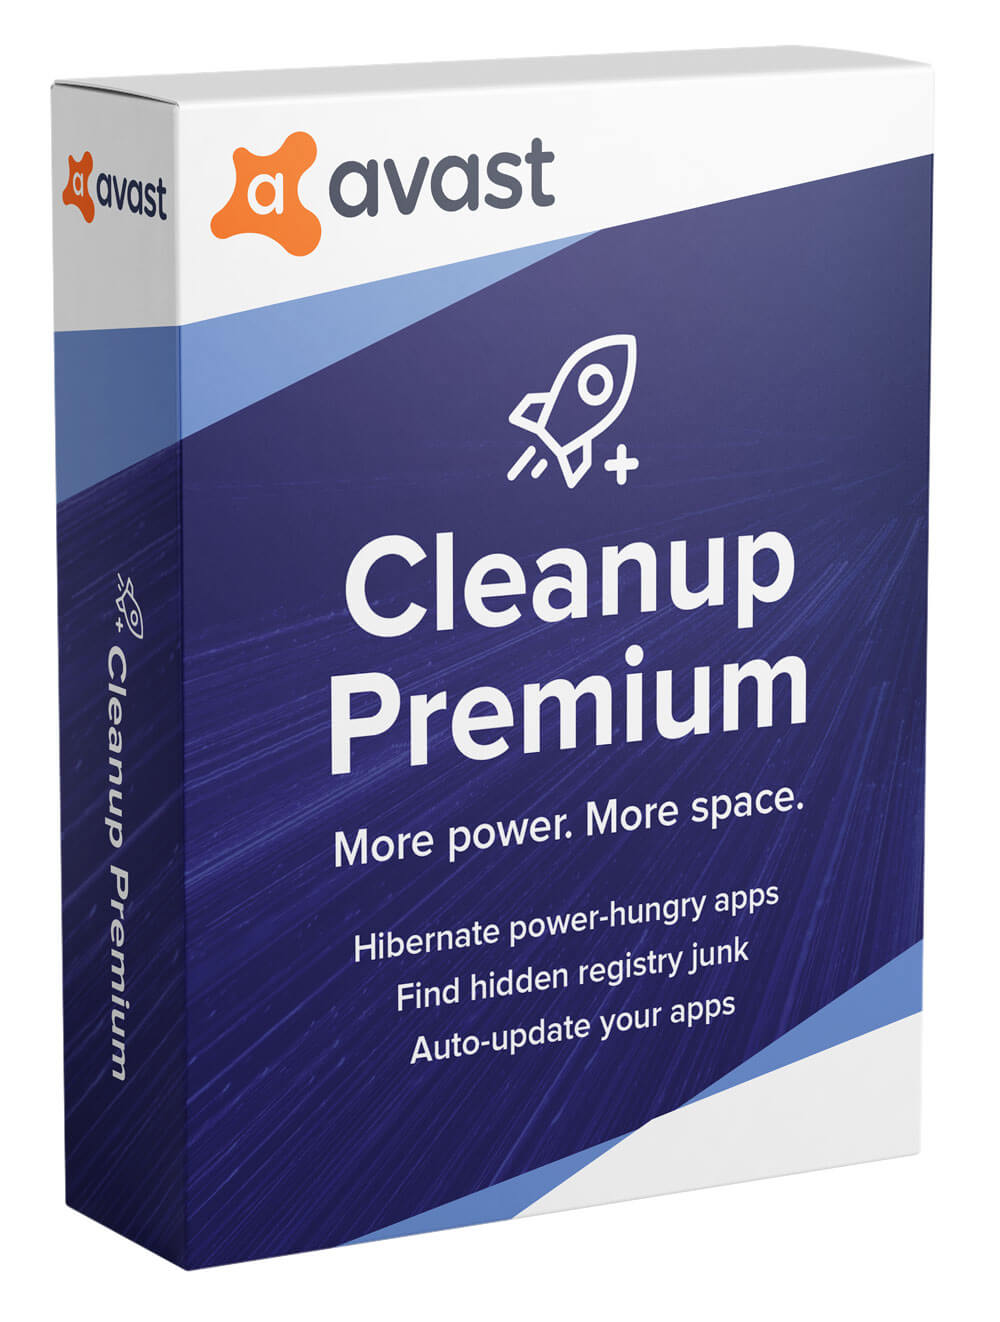 Avast Cleanup Premium olcsón jogtiszta szoftver rendelés termékkulcsok